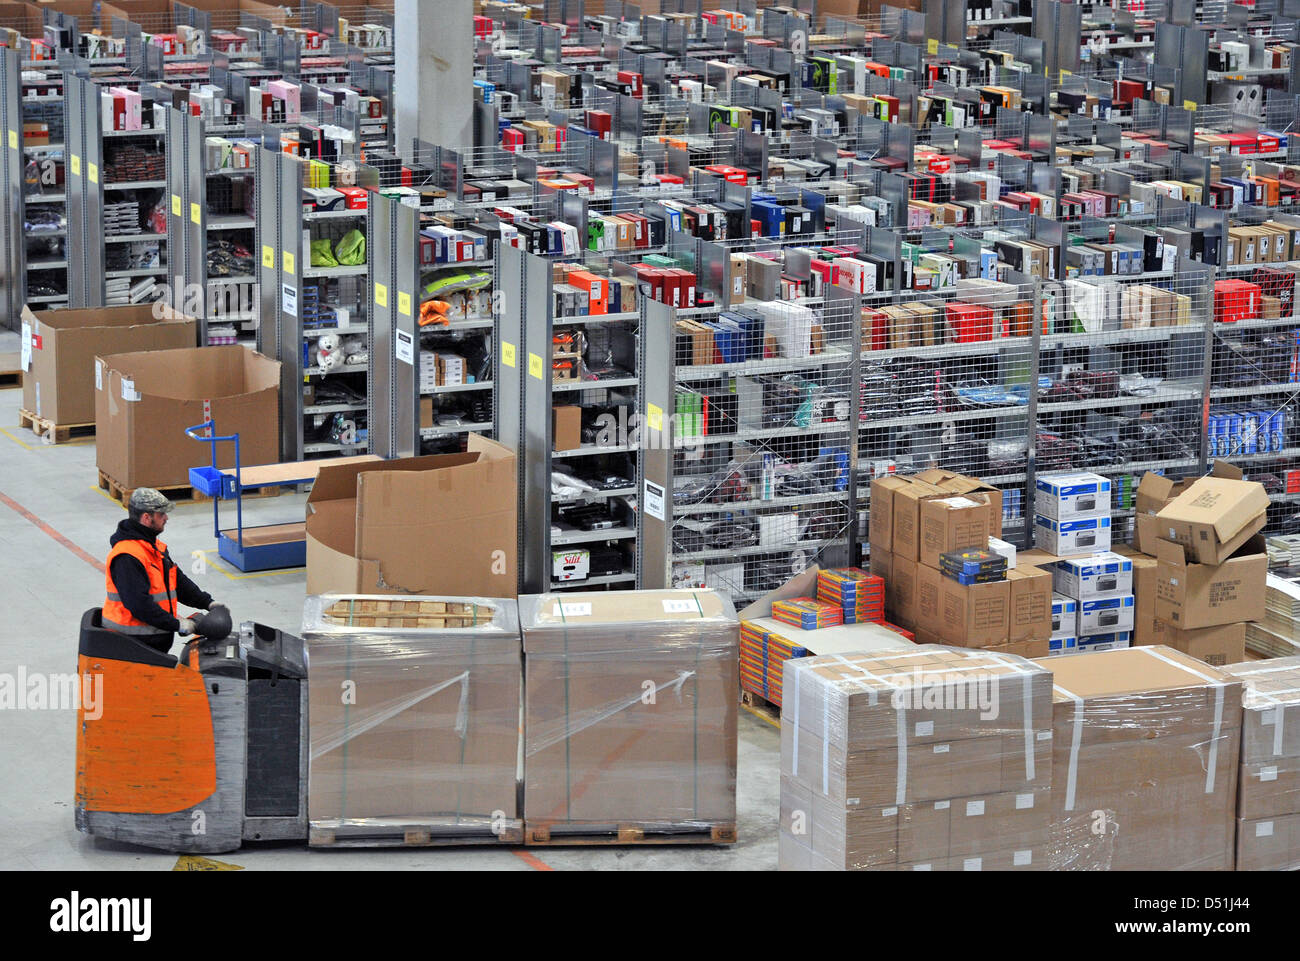 Los paquetes son embalados en el centro de logística de Amazon en Leipzig, Alemania, el 16 de diciembre de 2010. Amazon instalado 3.000 funcionarios adicionales para hacer frente a un máximo de 1,7 millones de pedidos para qeu las ventas navideñas. Foto: Hendrik Schmidt Foto de stock